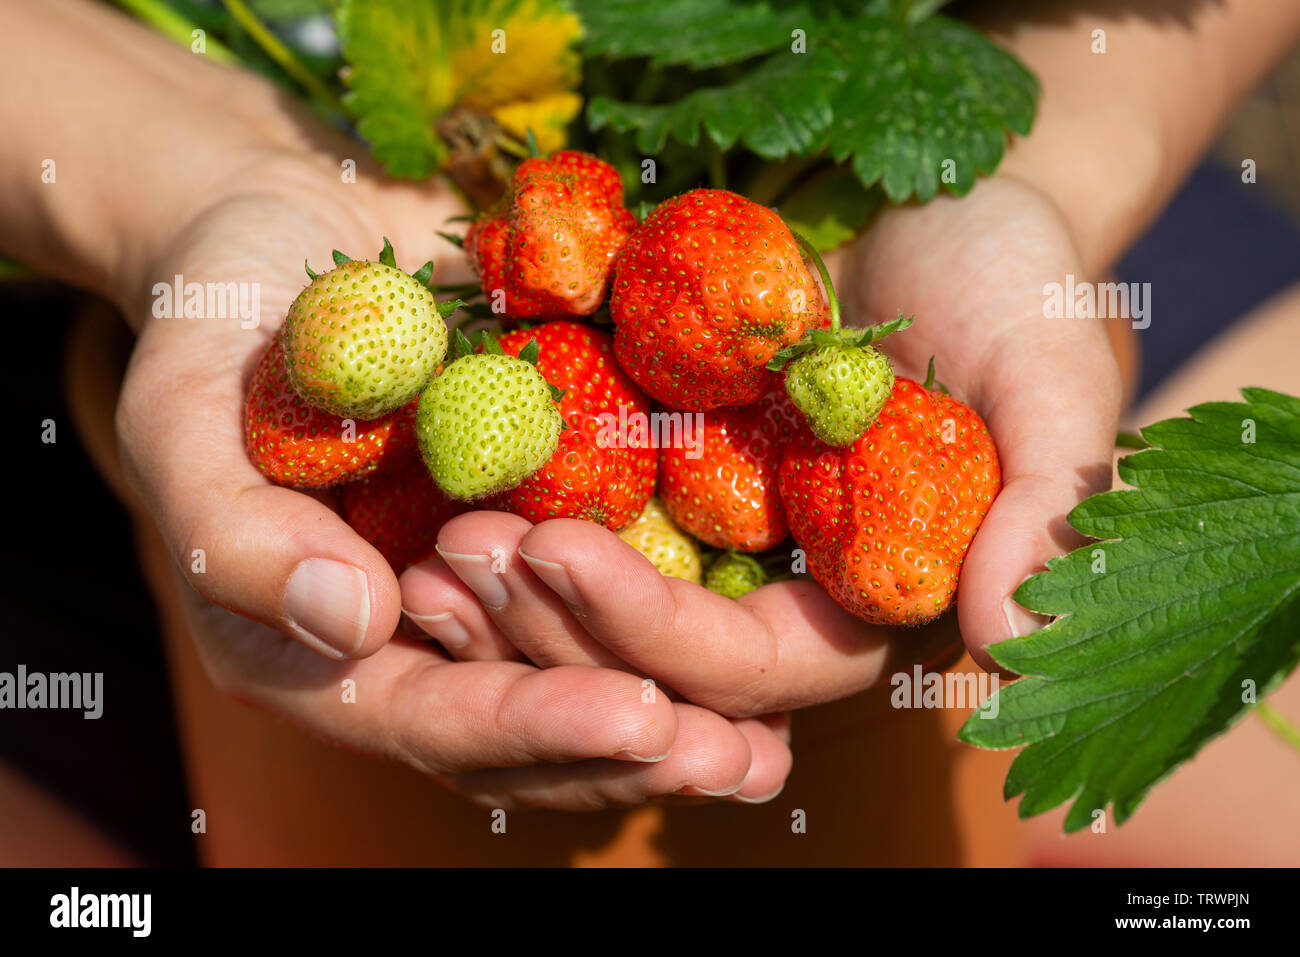 Gärtner hält selbst angebauten Erdbeeren - Fragaria ananassa - alle Formen und Größen Stockfoto